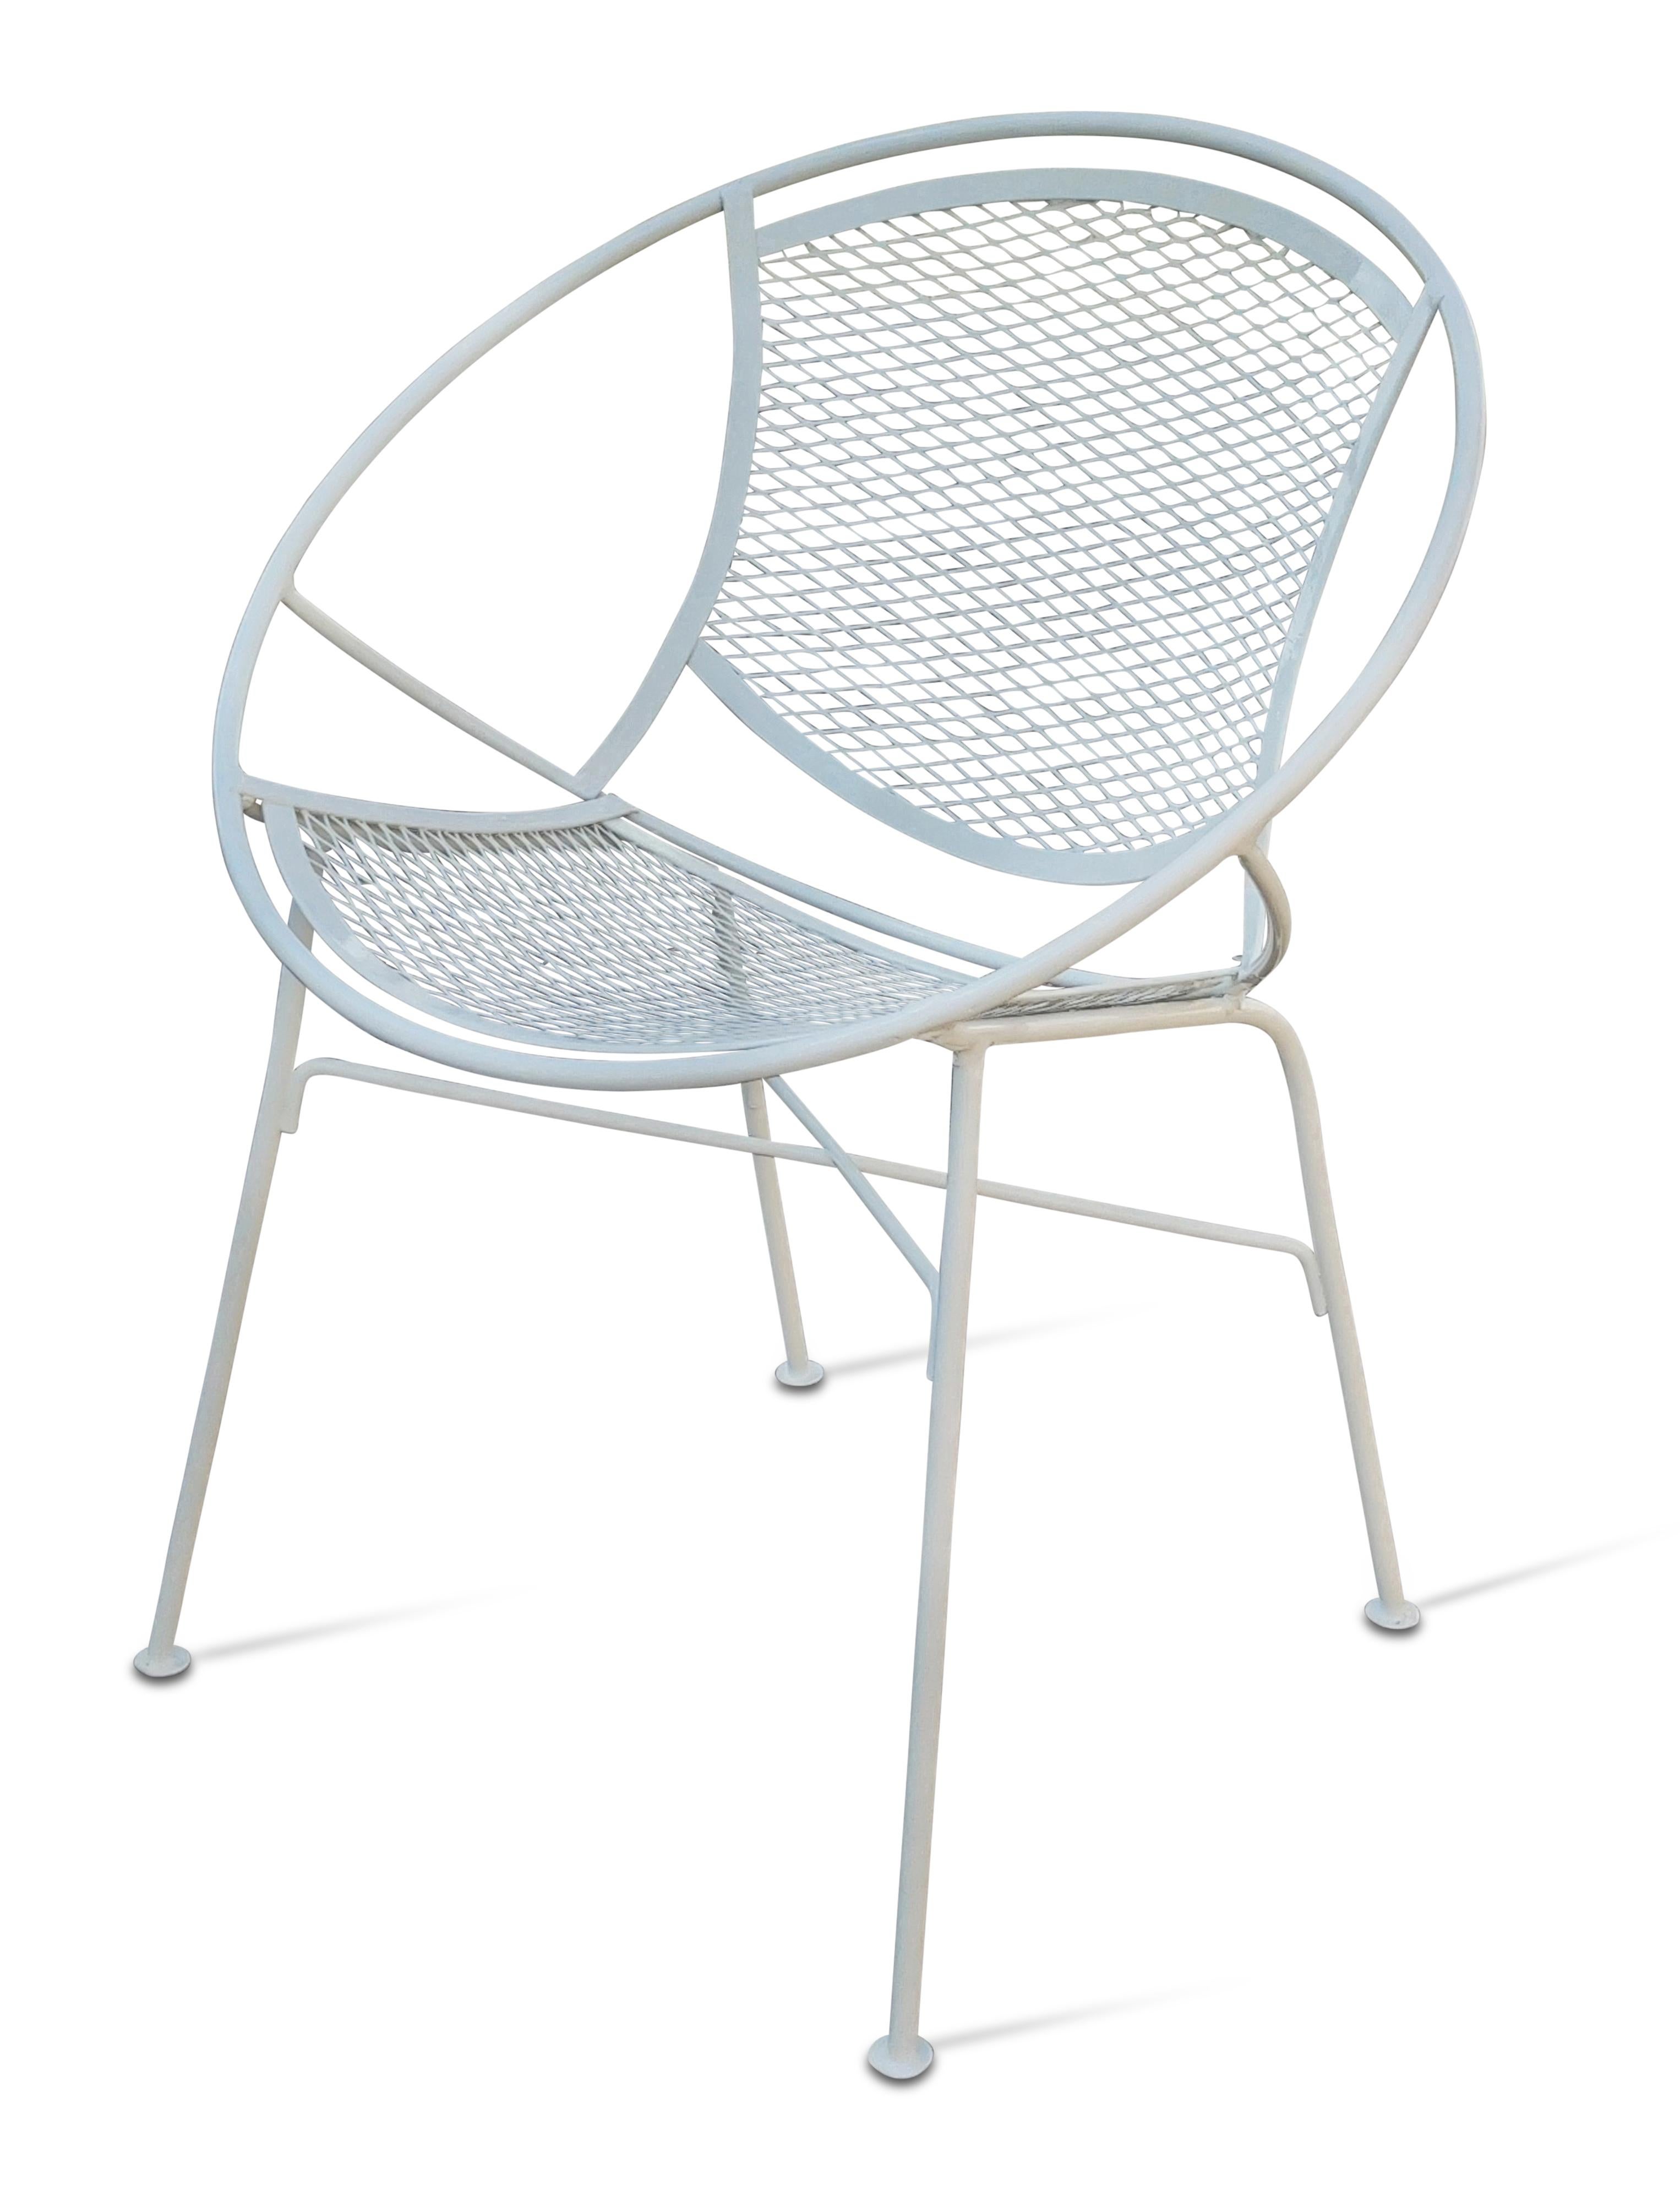 Un ensemble de huit belles chaises conçues par Maurizio Tempestini pour le prestigieux fabricant Salterini. Surnommées les chaises 